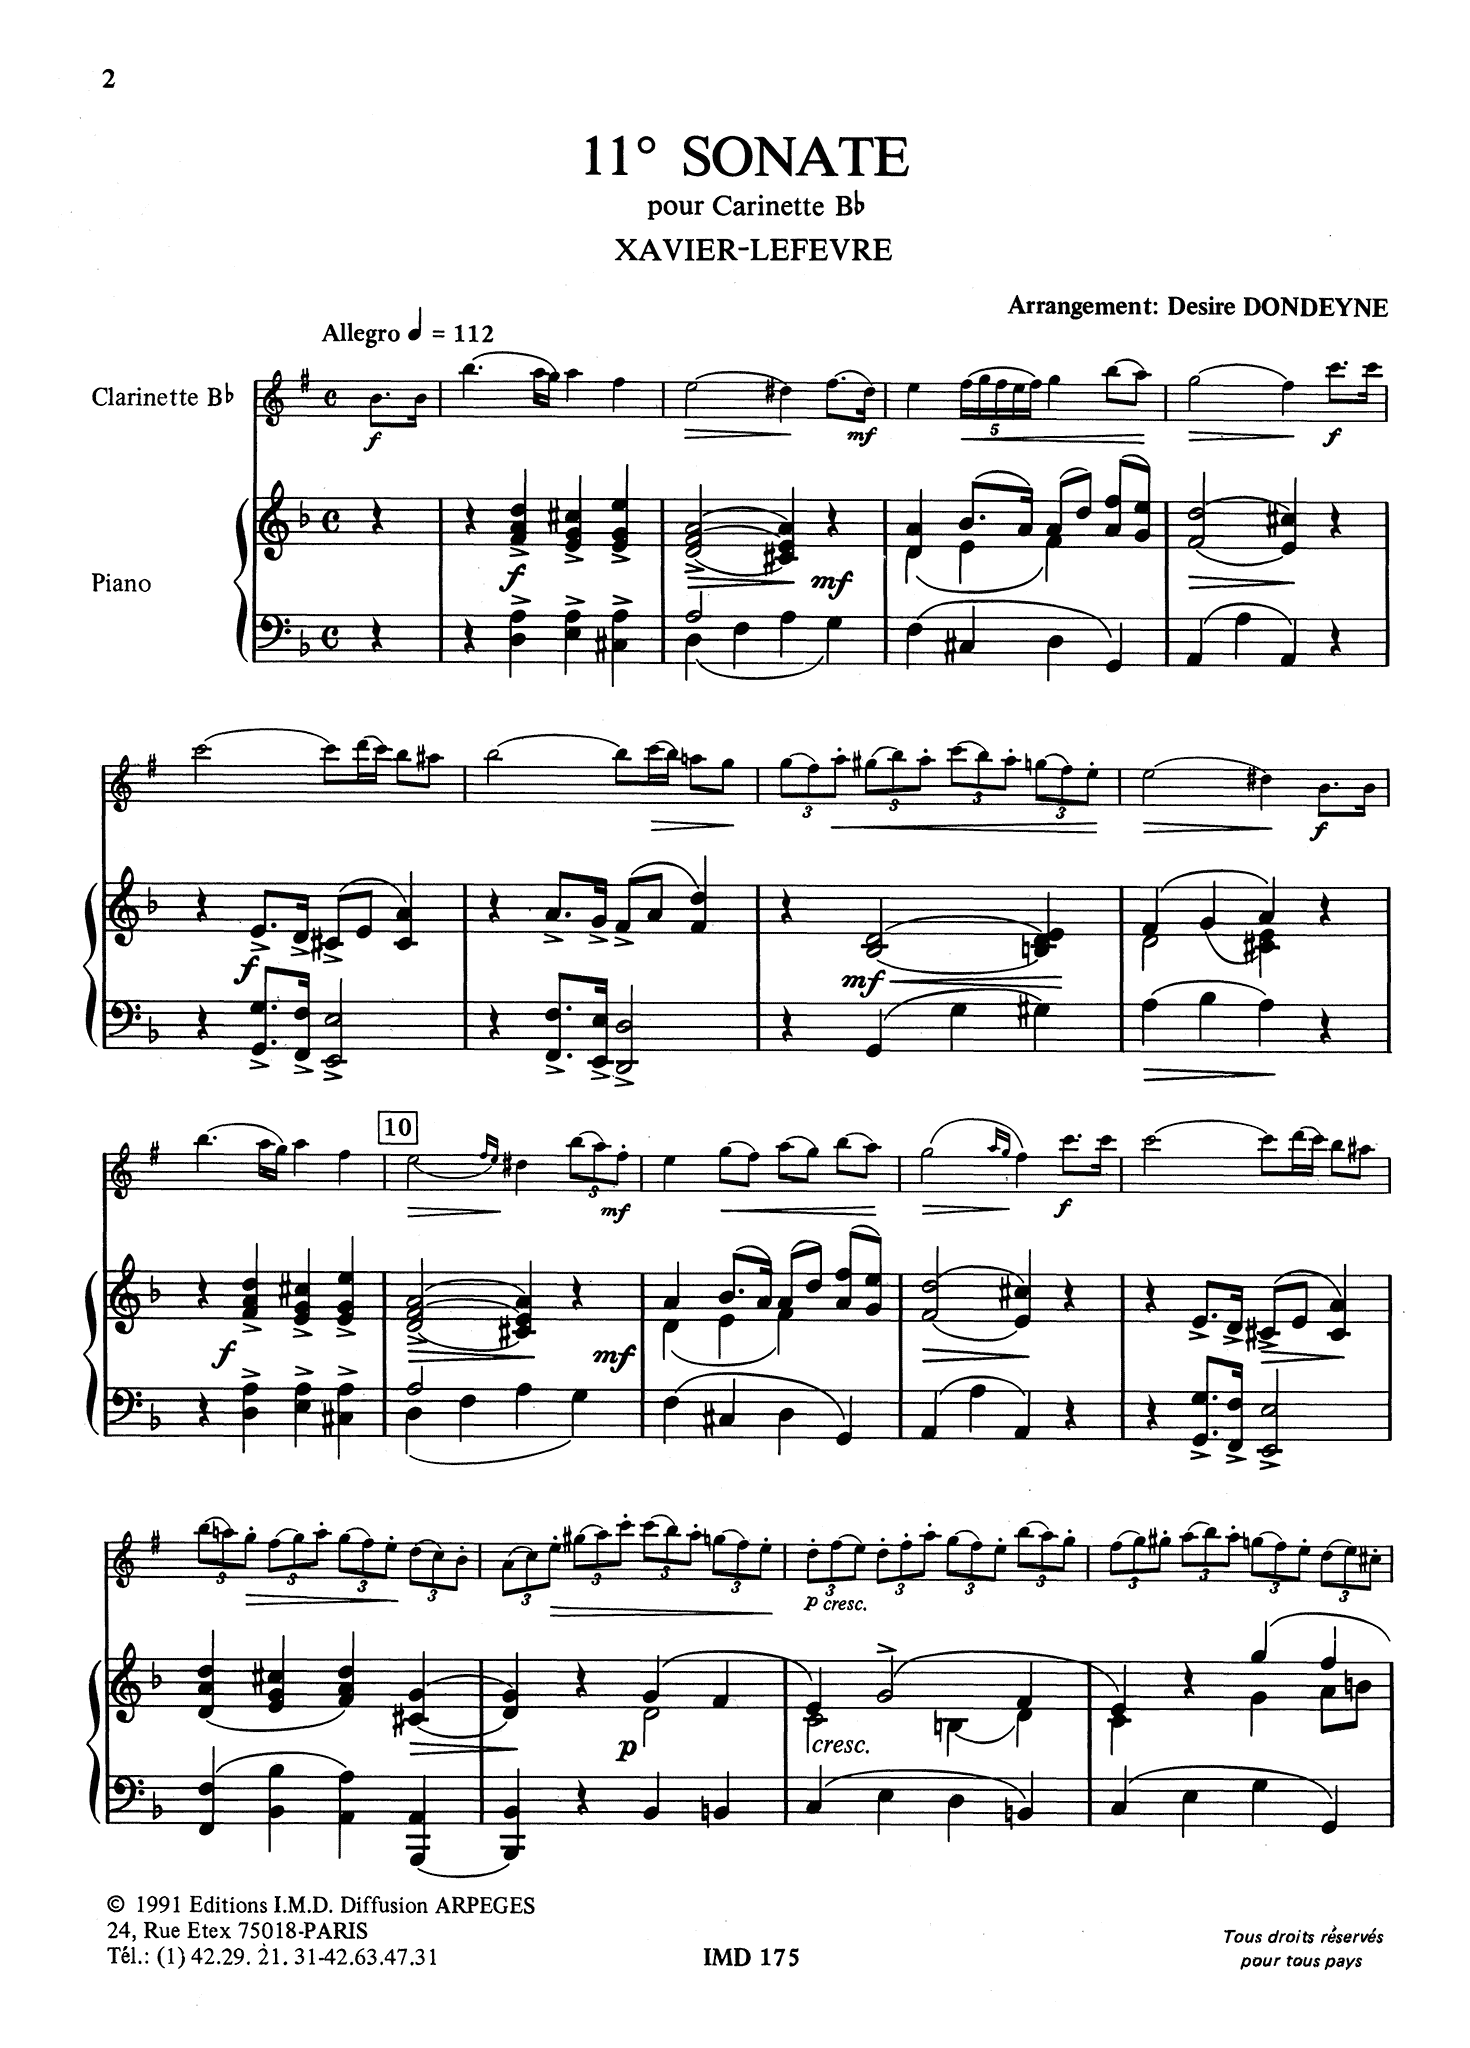 Lefèvre Sonata No. 11 in E Minor - Movement 1